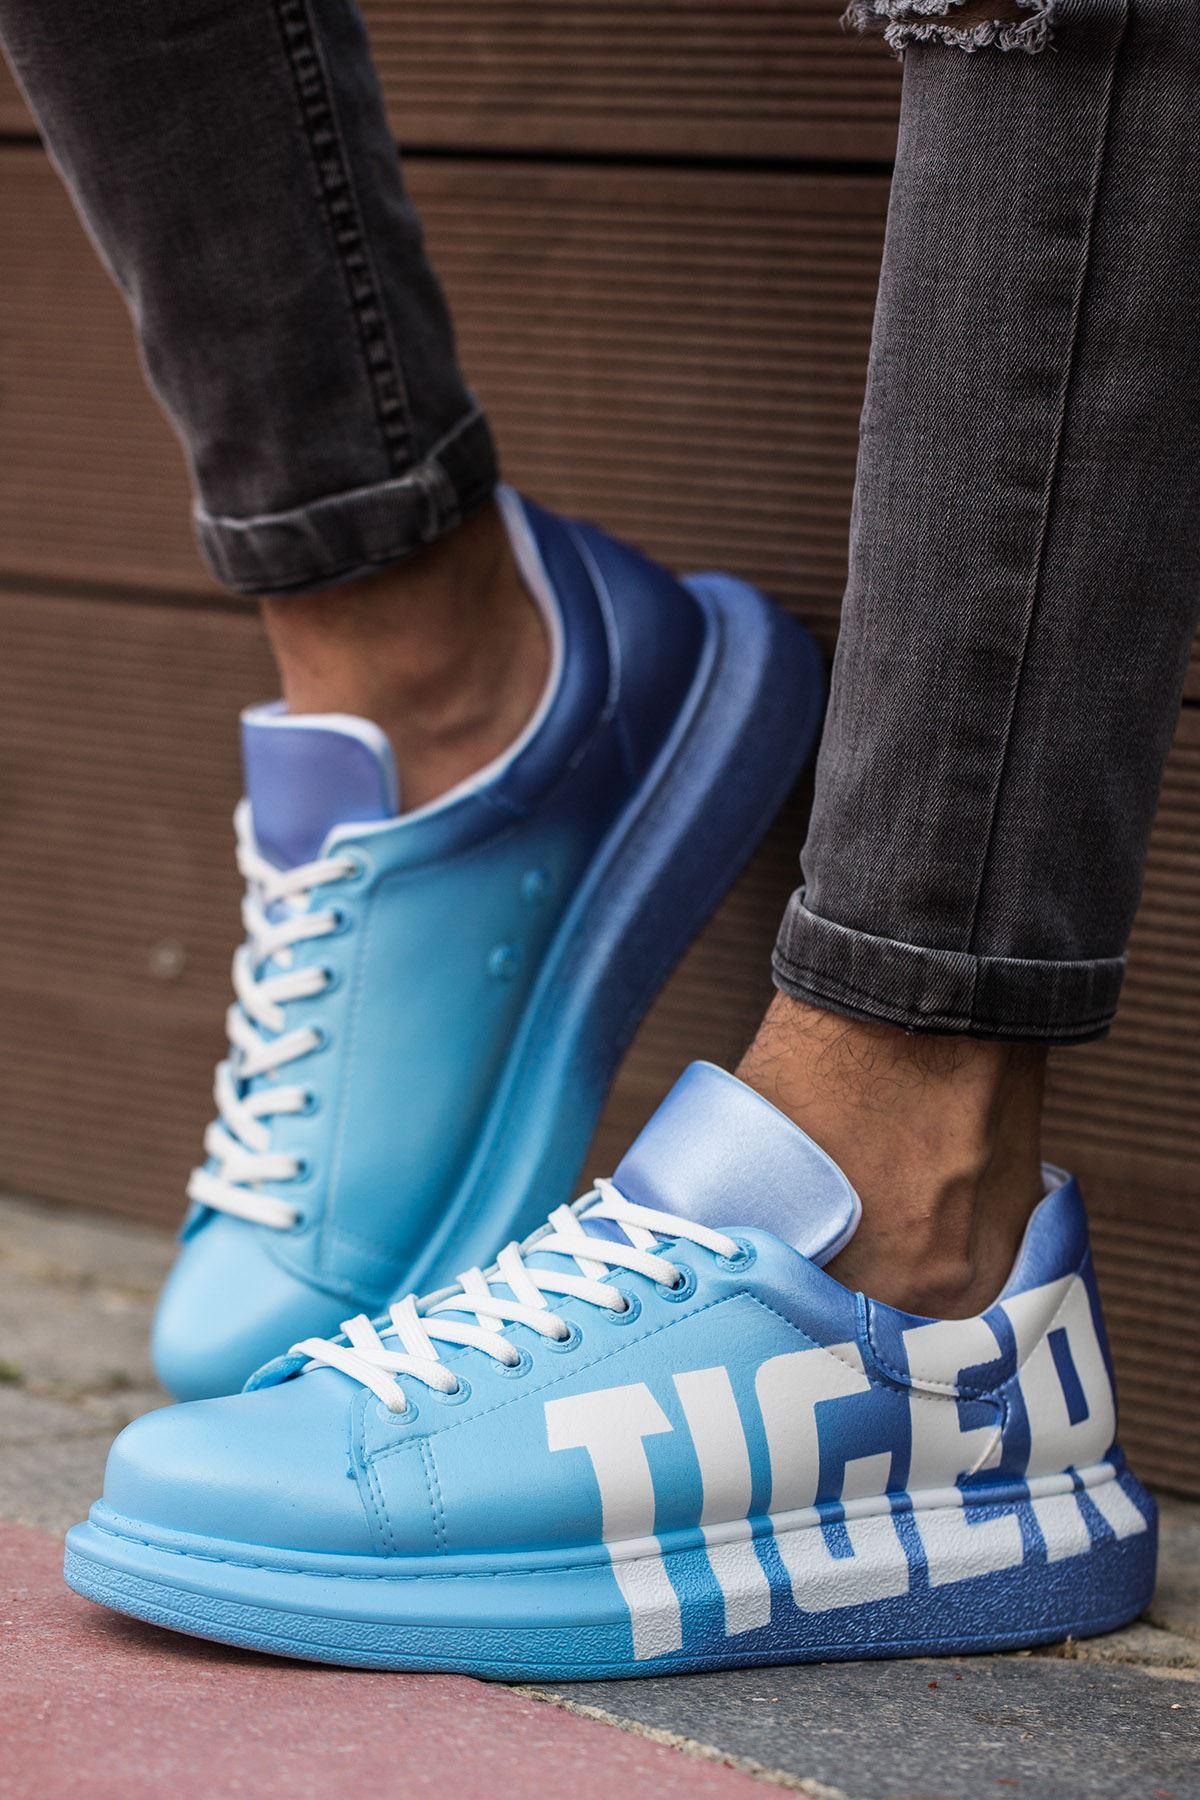 CH254 Men's Unisex Blue-Dark Blue Casual Sneaker Sports Shoes - STREET MODE ™